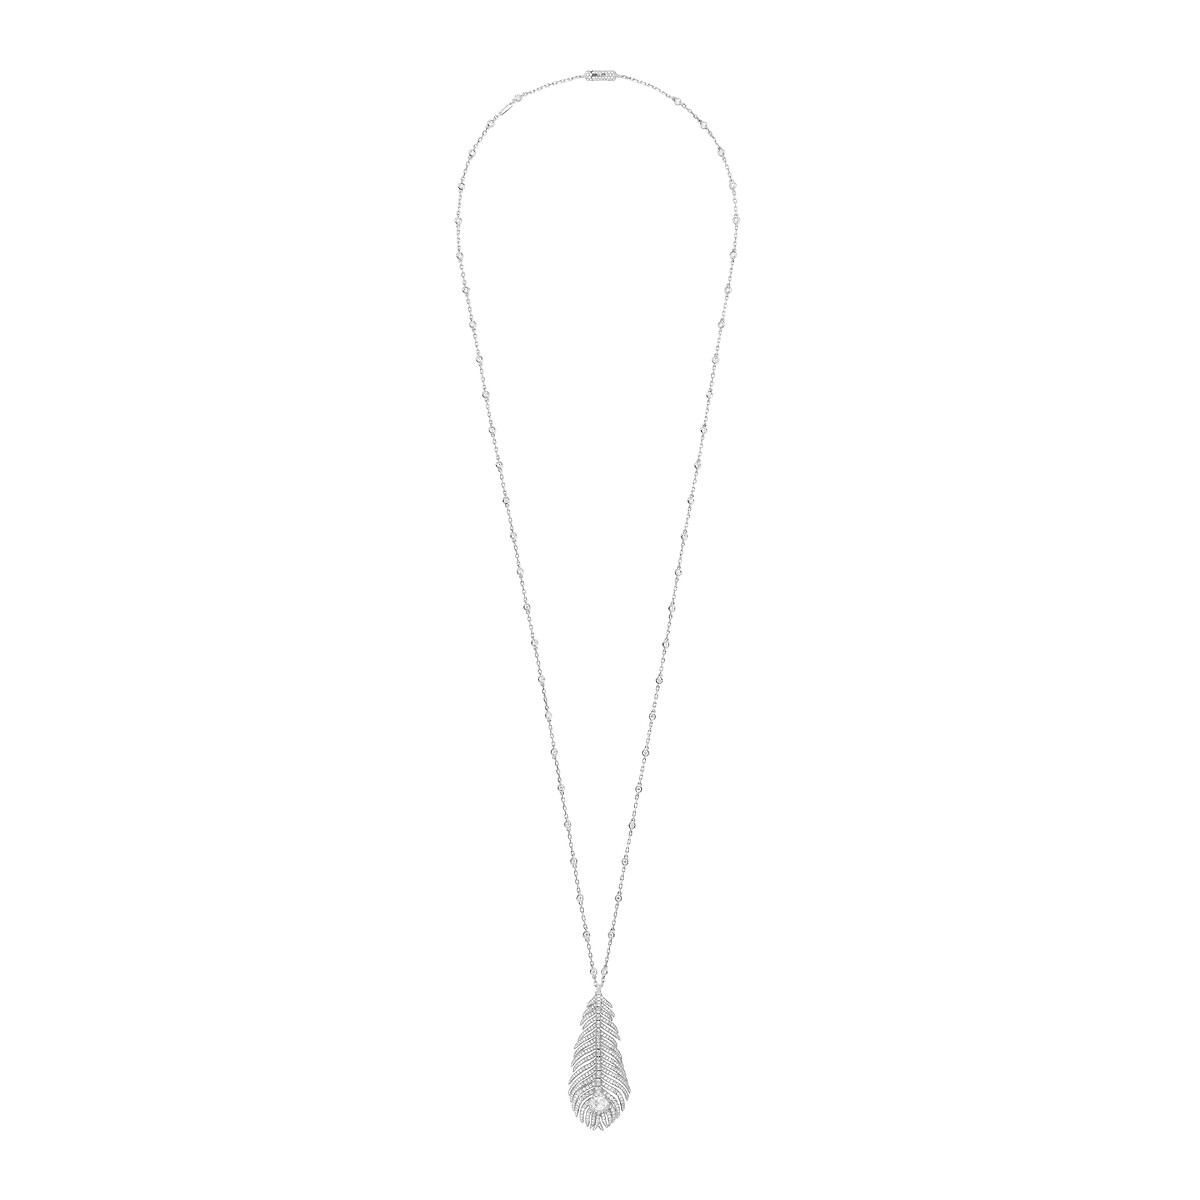 Second product packshot​ Plume de Paon necklace 